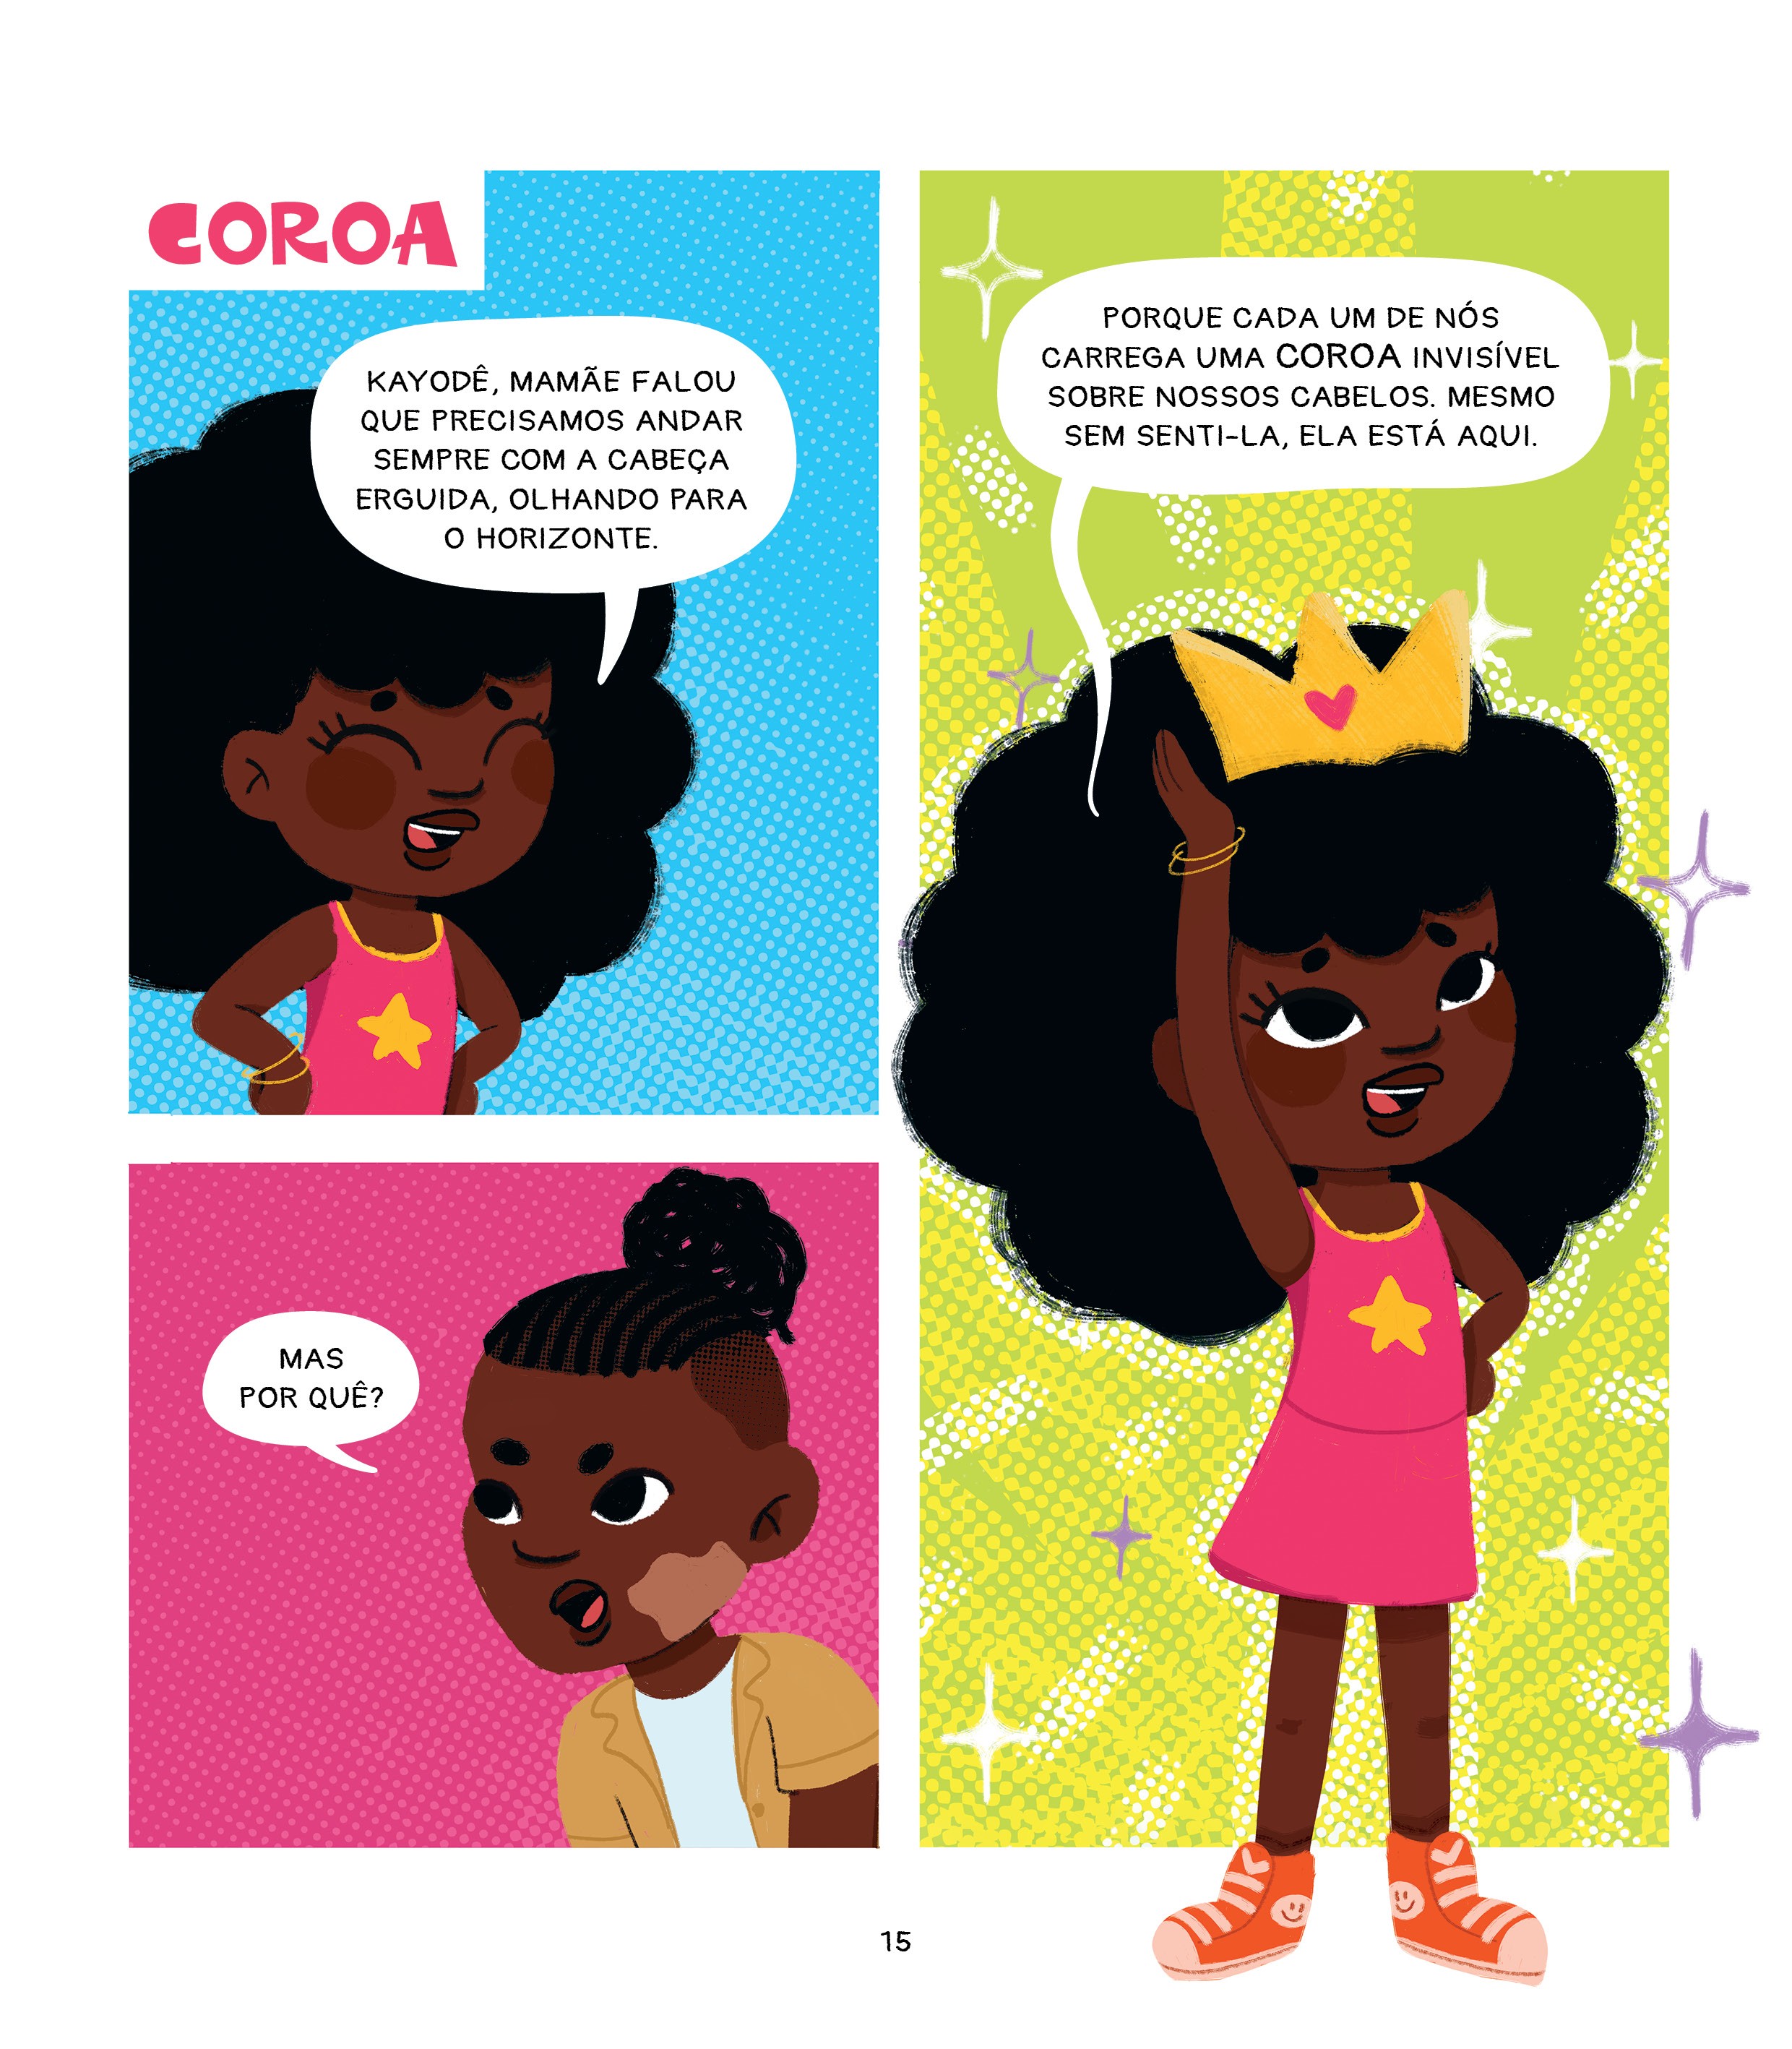 Coroa é parte do livro infantil Tayó em Quadrinhos, de Kiusam de Oliveira (Foto: Reprodução)